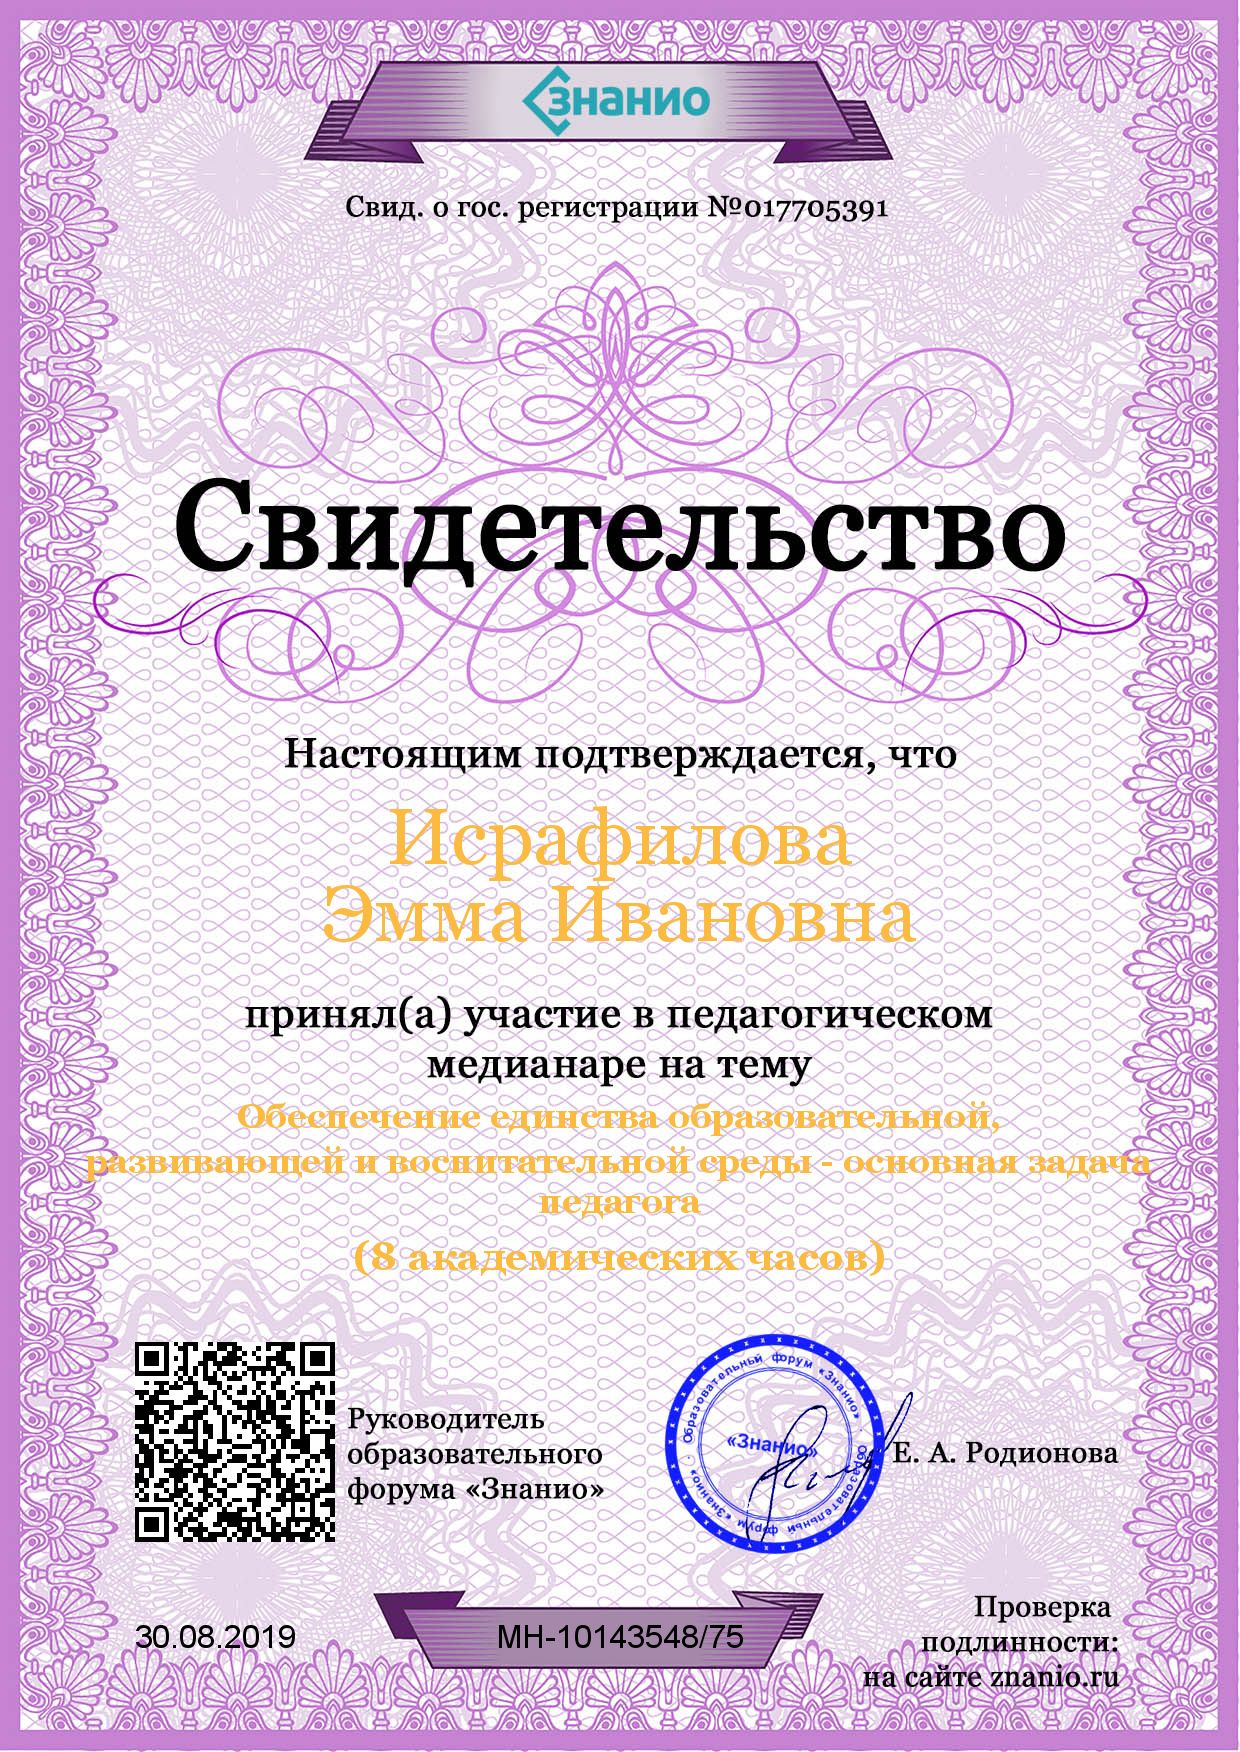 Сертификат Медианар Единство образовательной среды